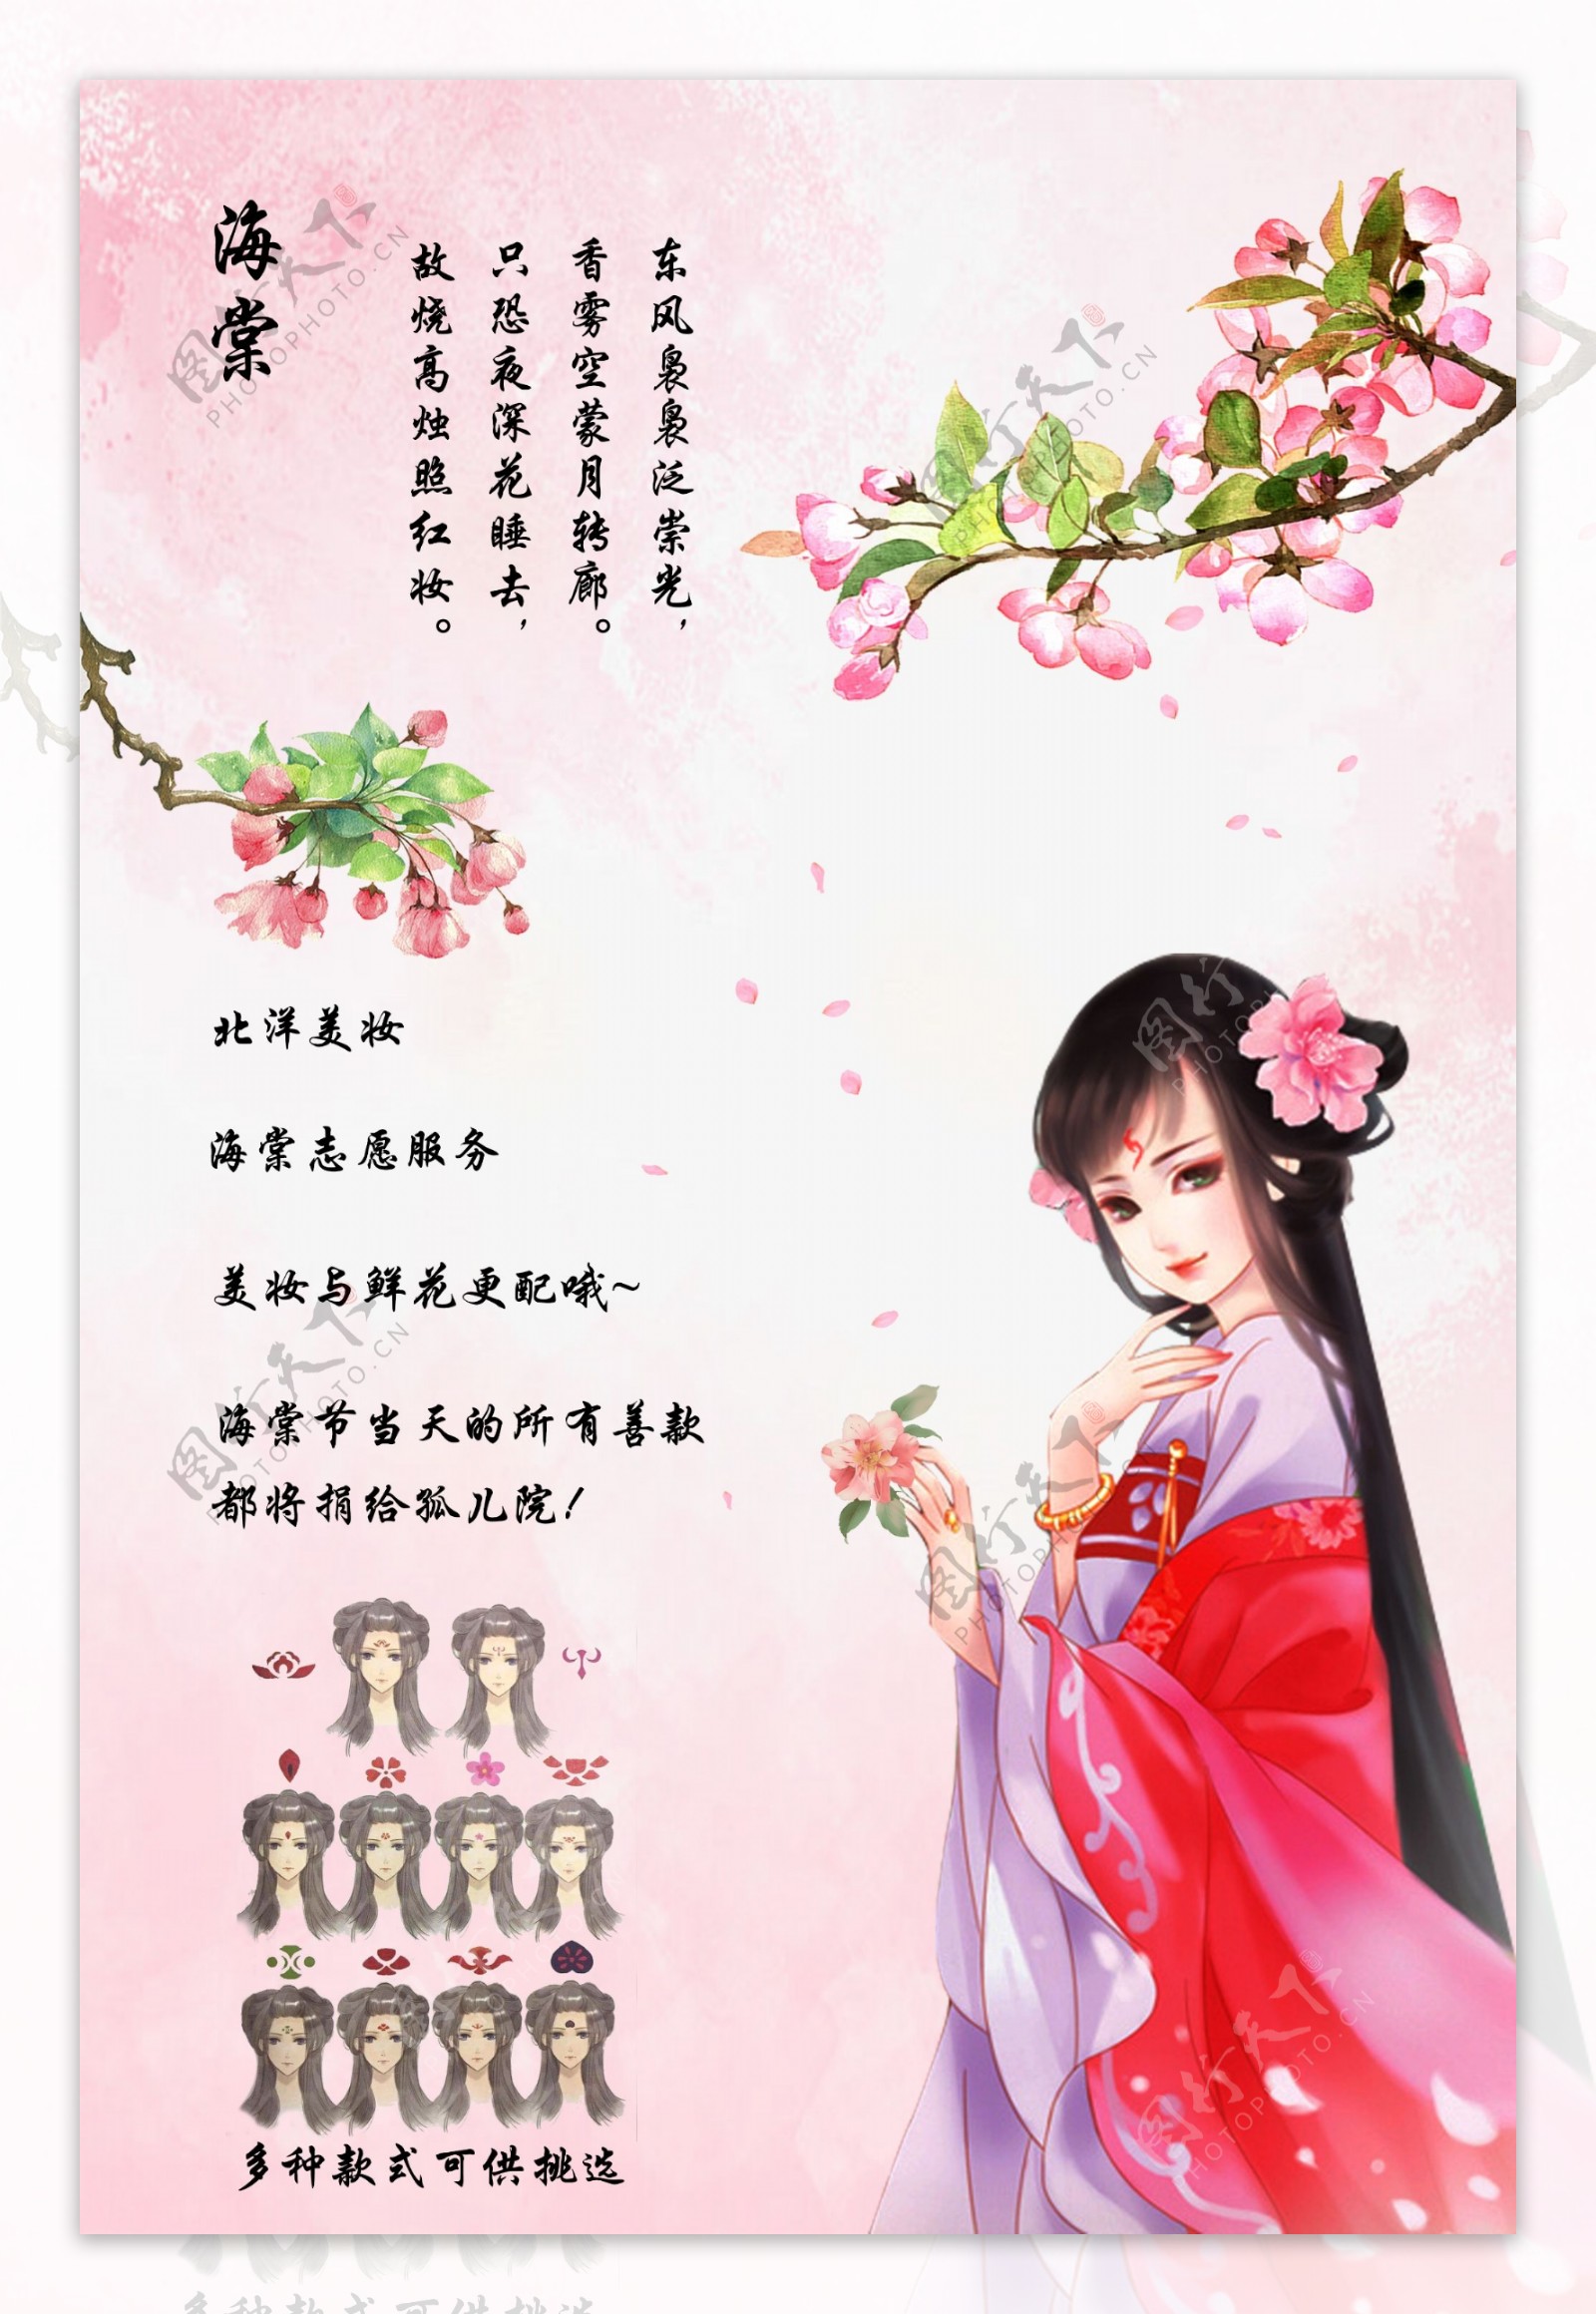 海棠节清新手绘海报